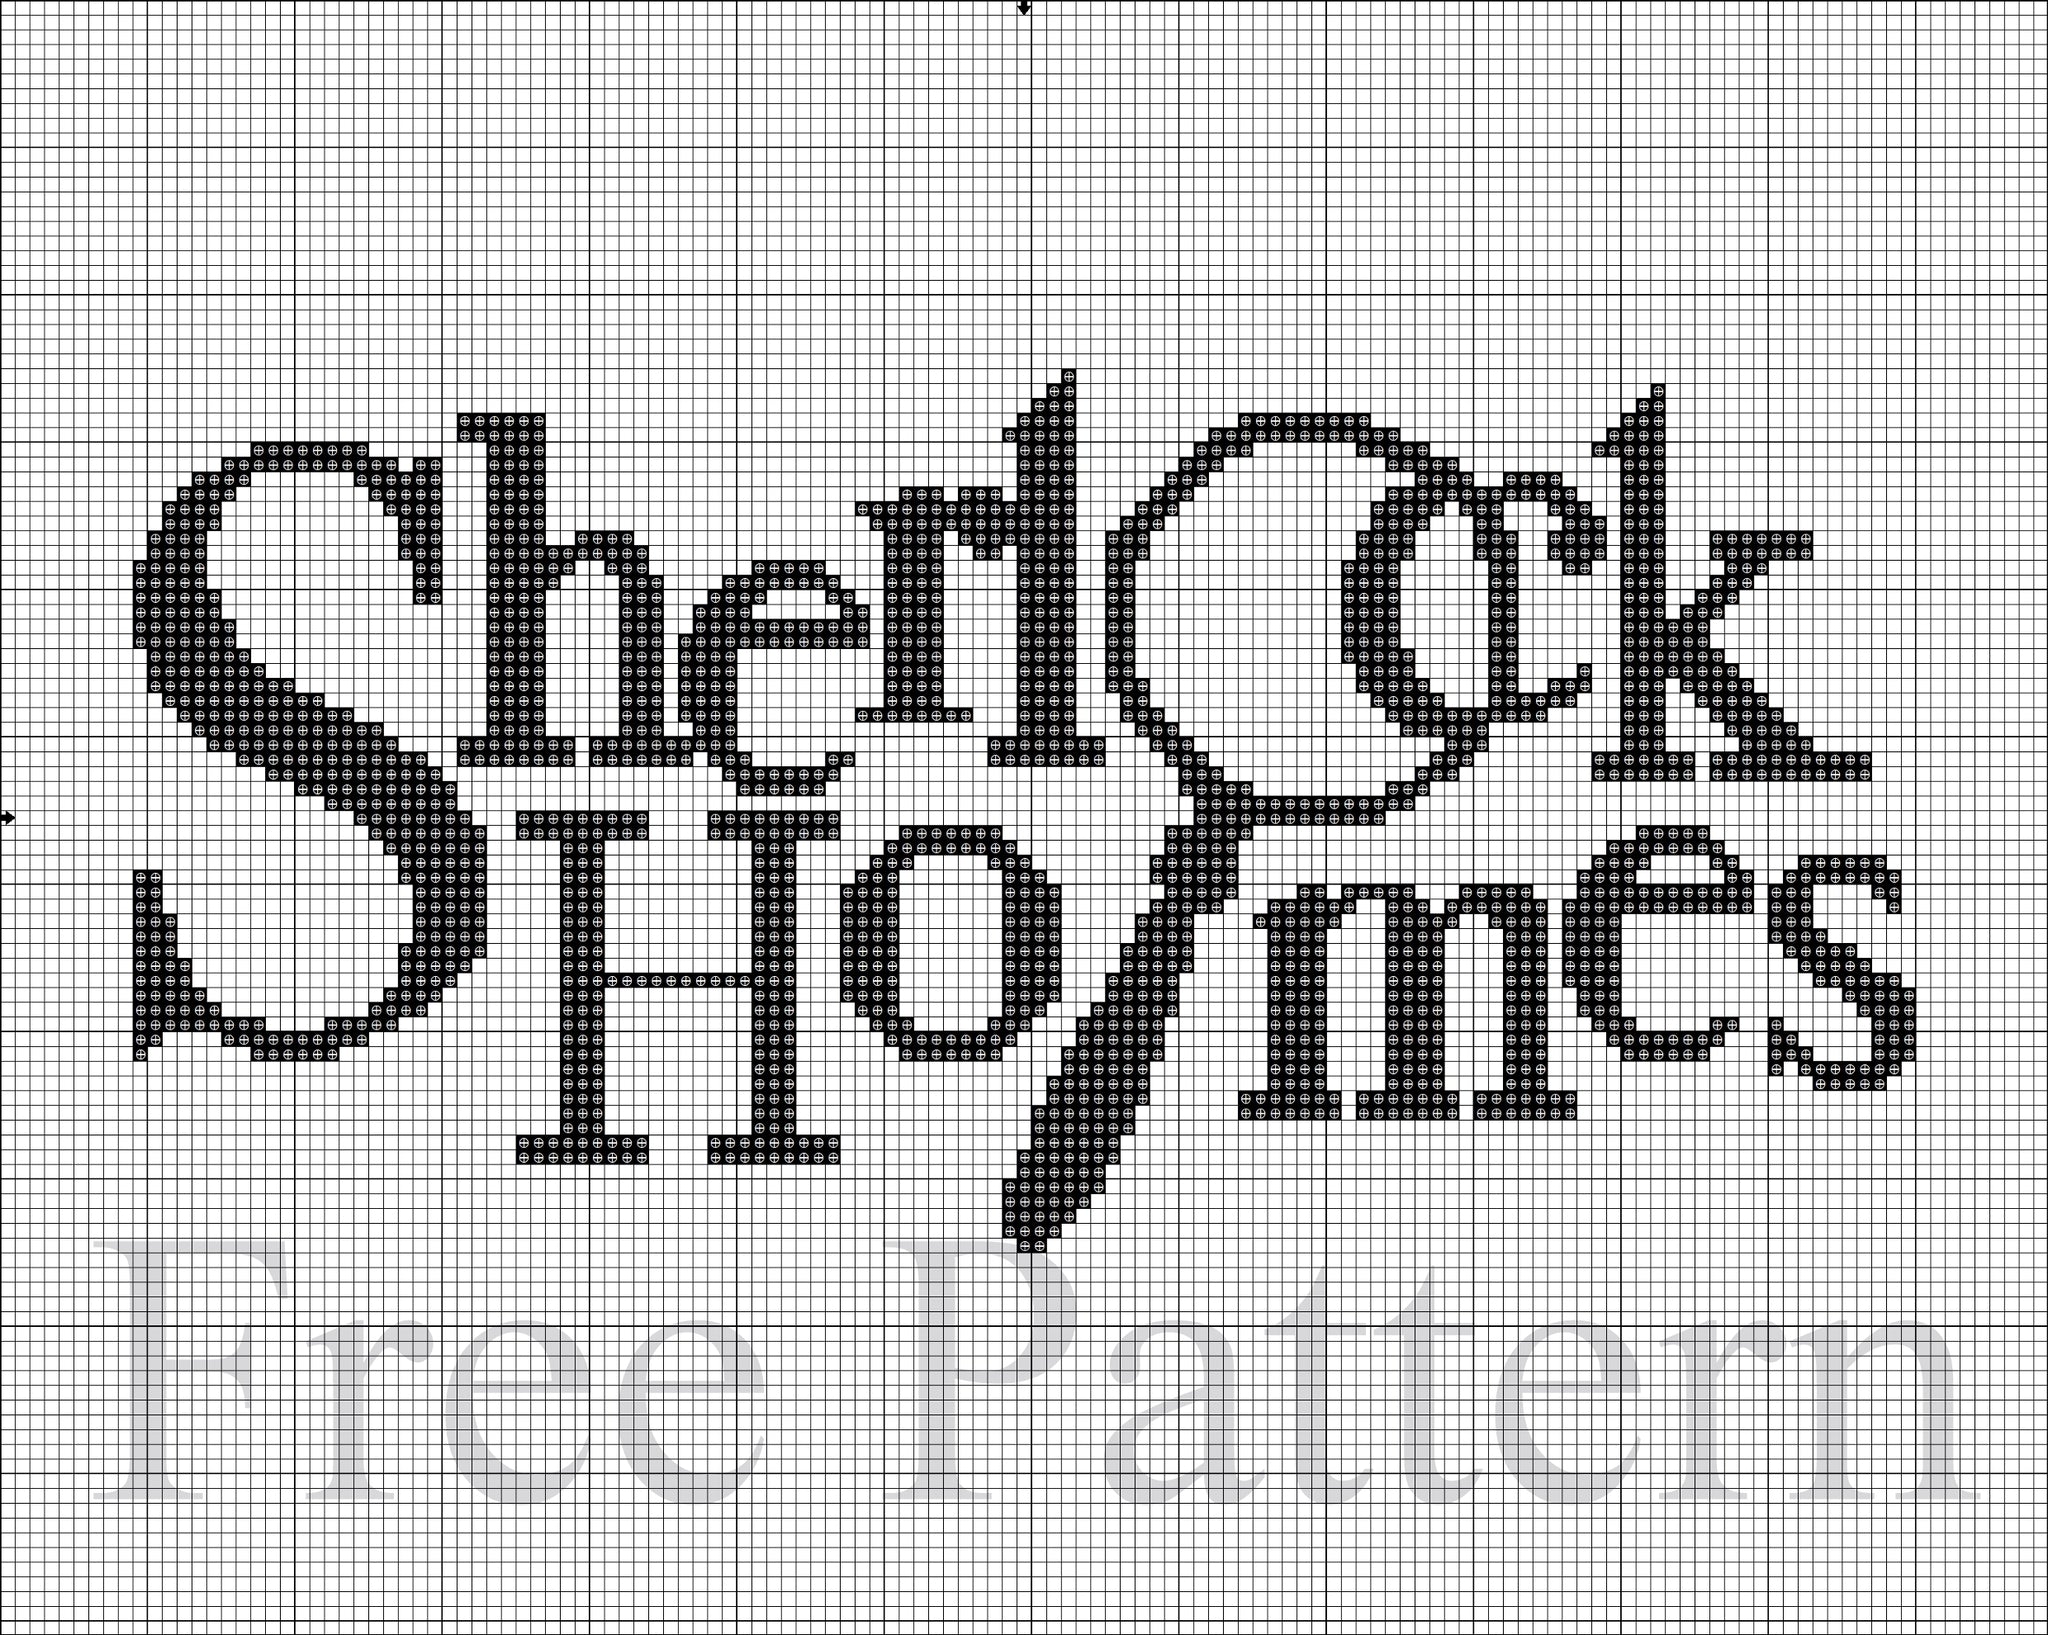 Sherlock Holmes cross stitch pattern